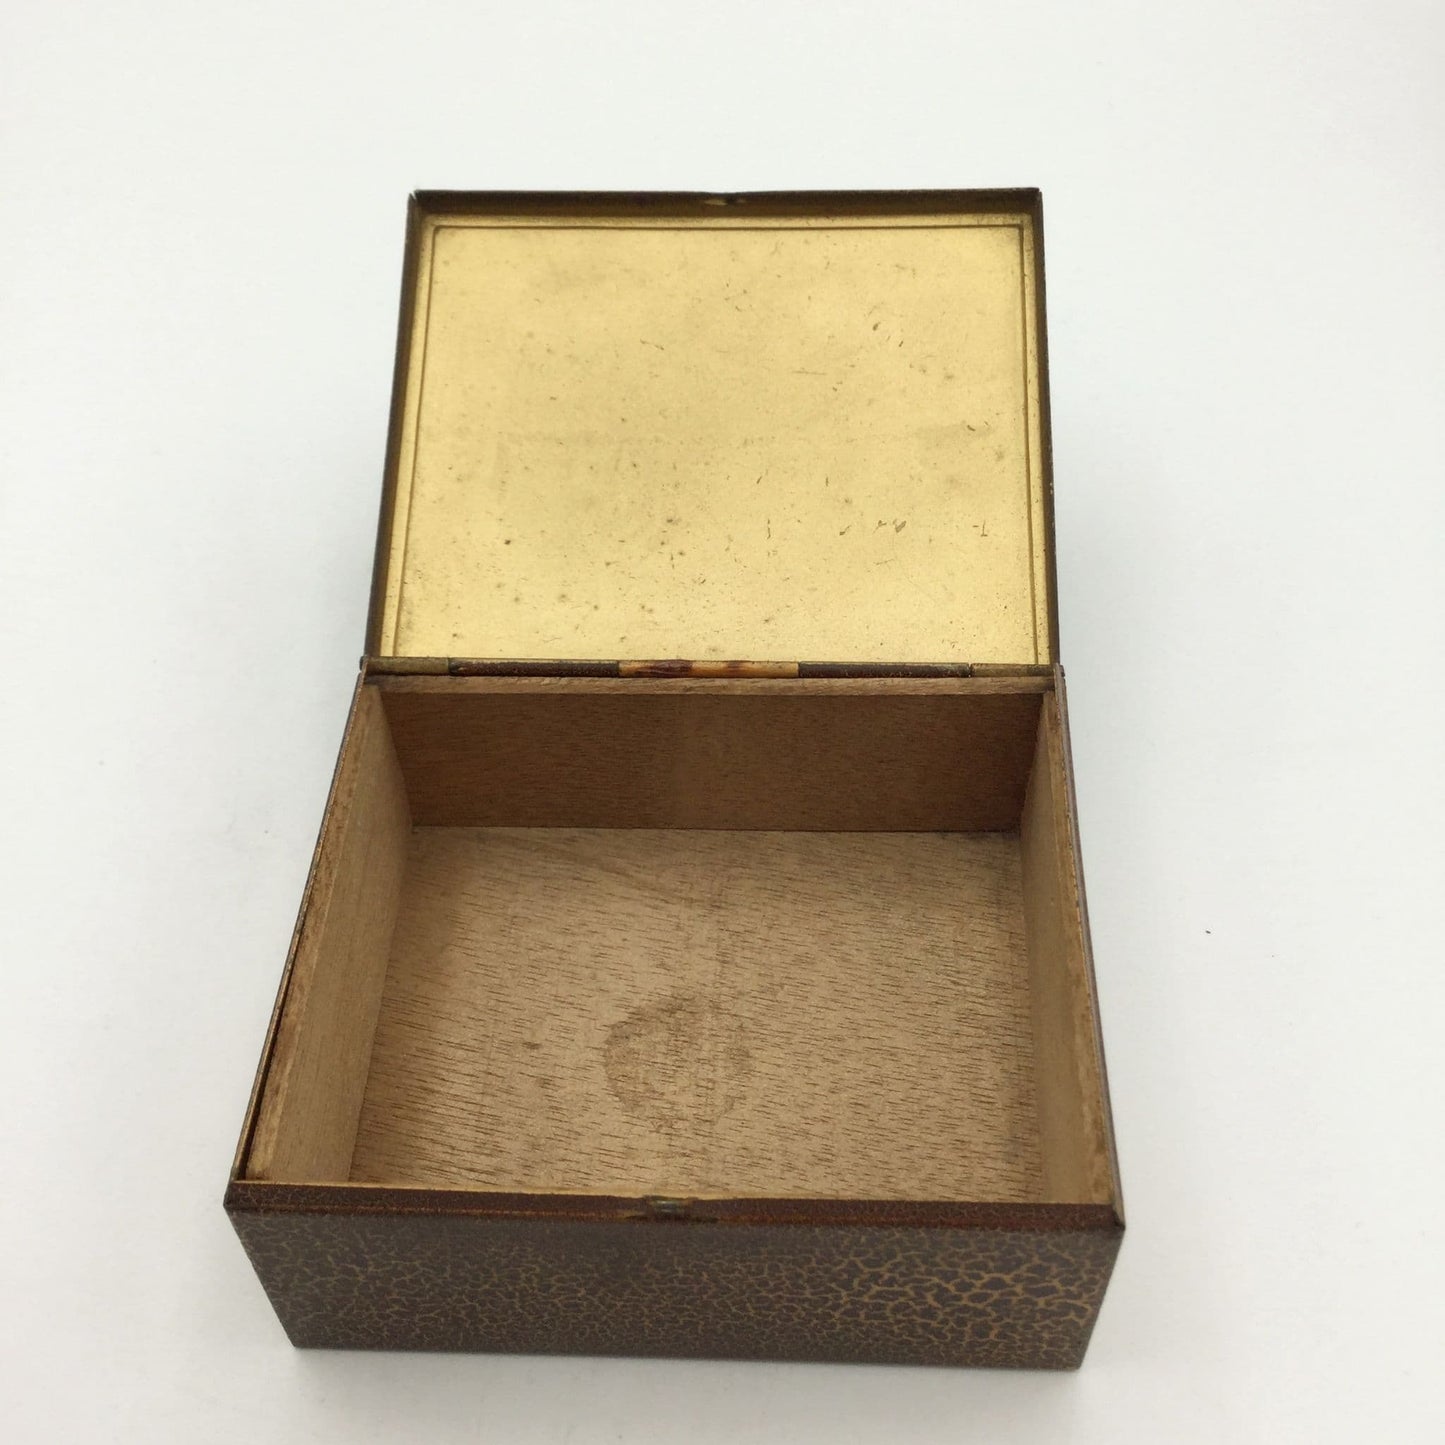 Vintage 1950s Metal Trinket or Cufflinks Box